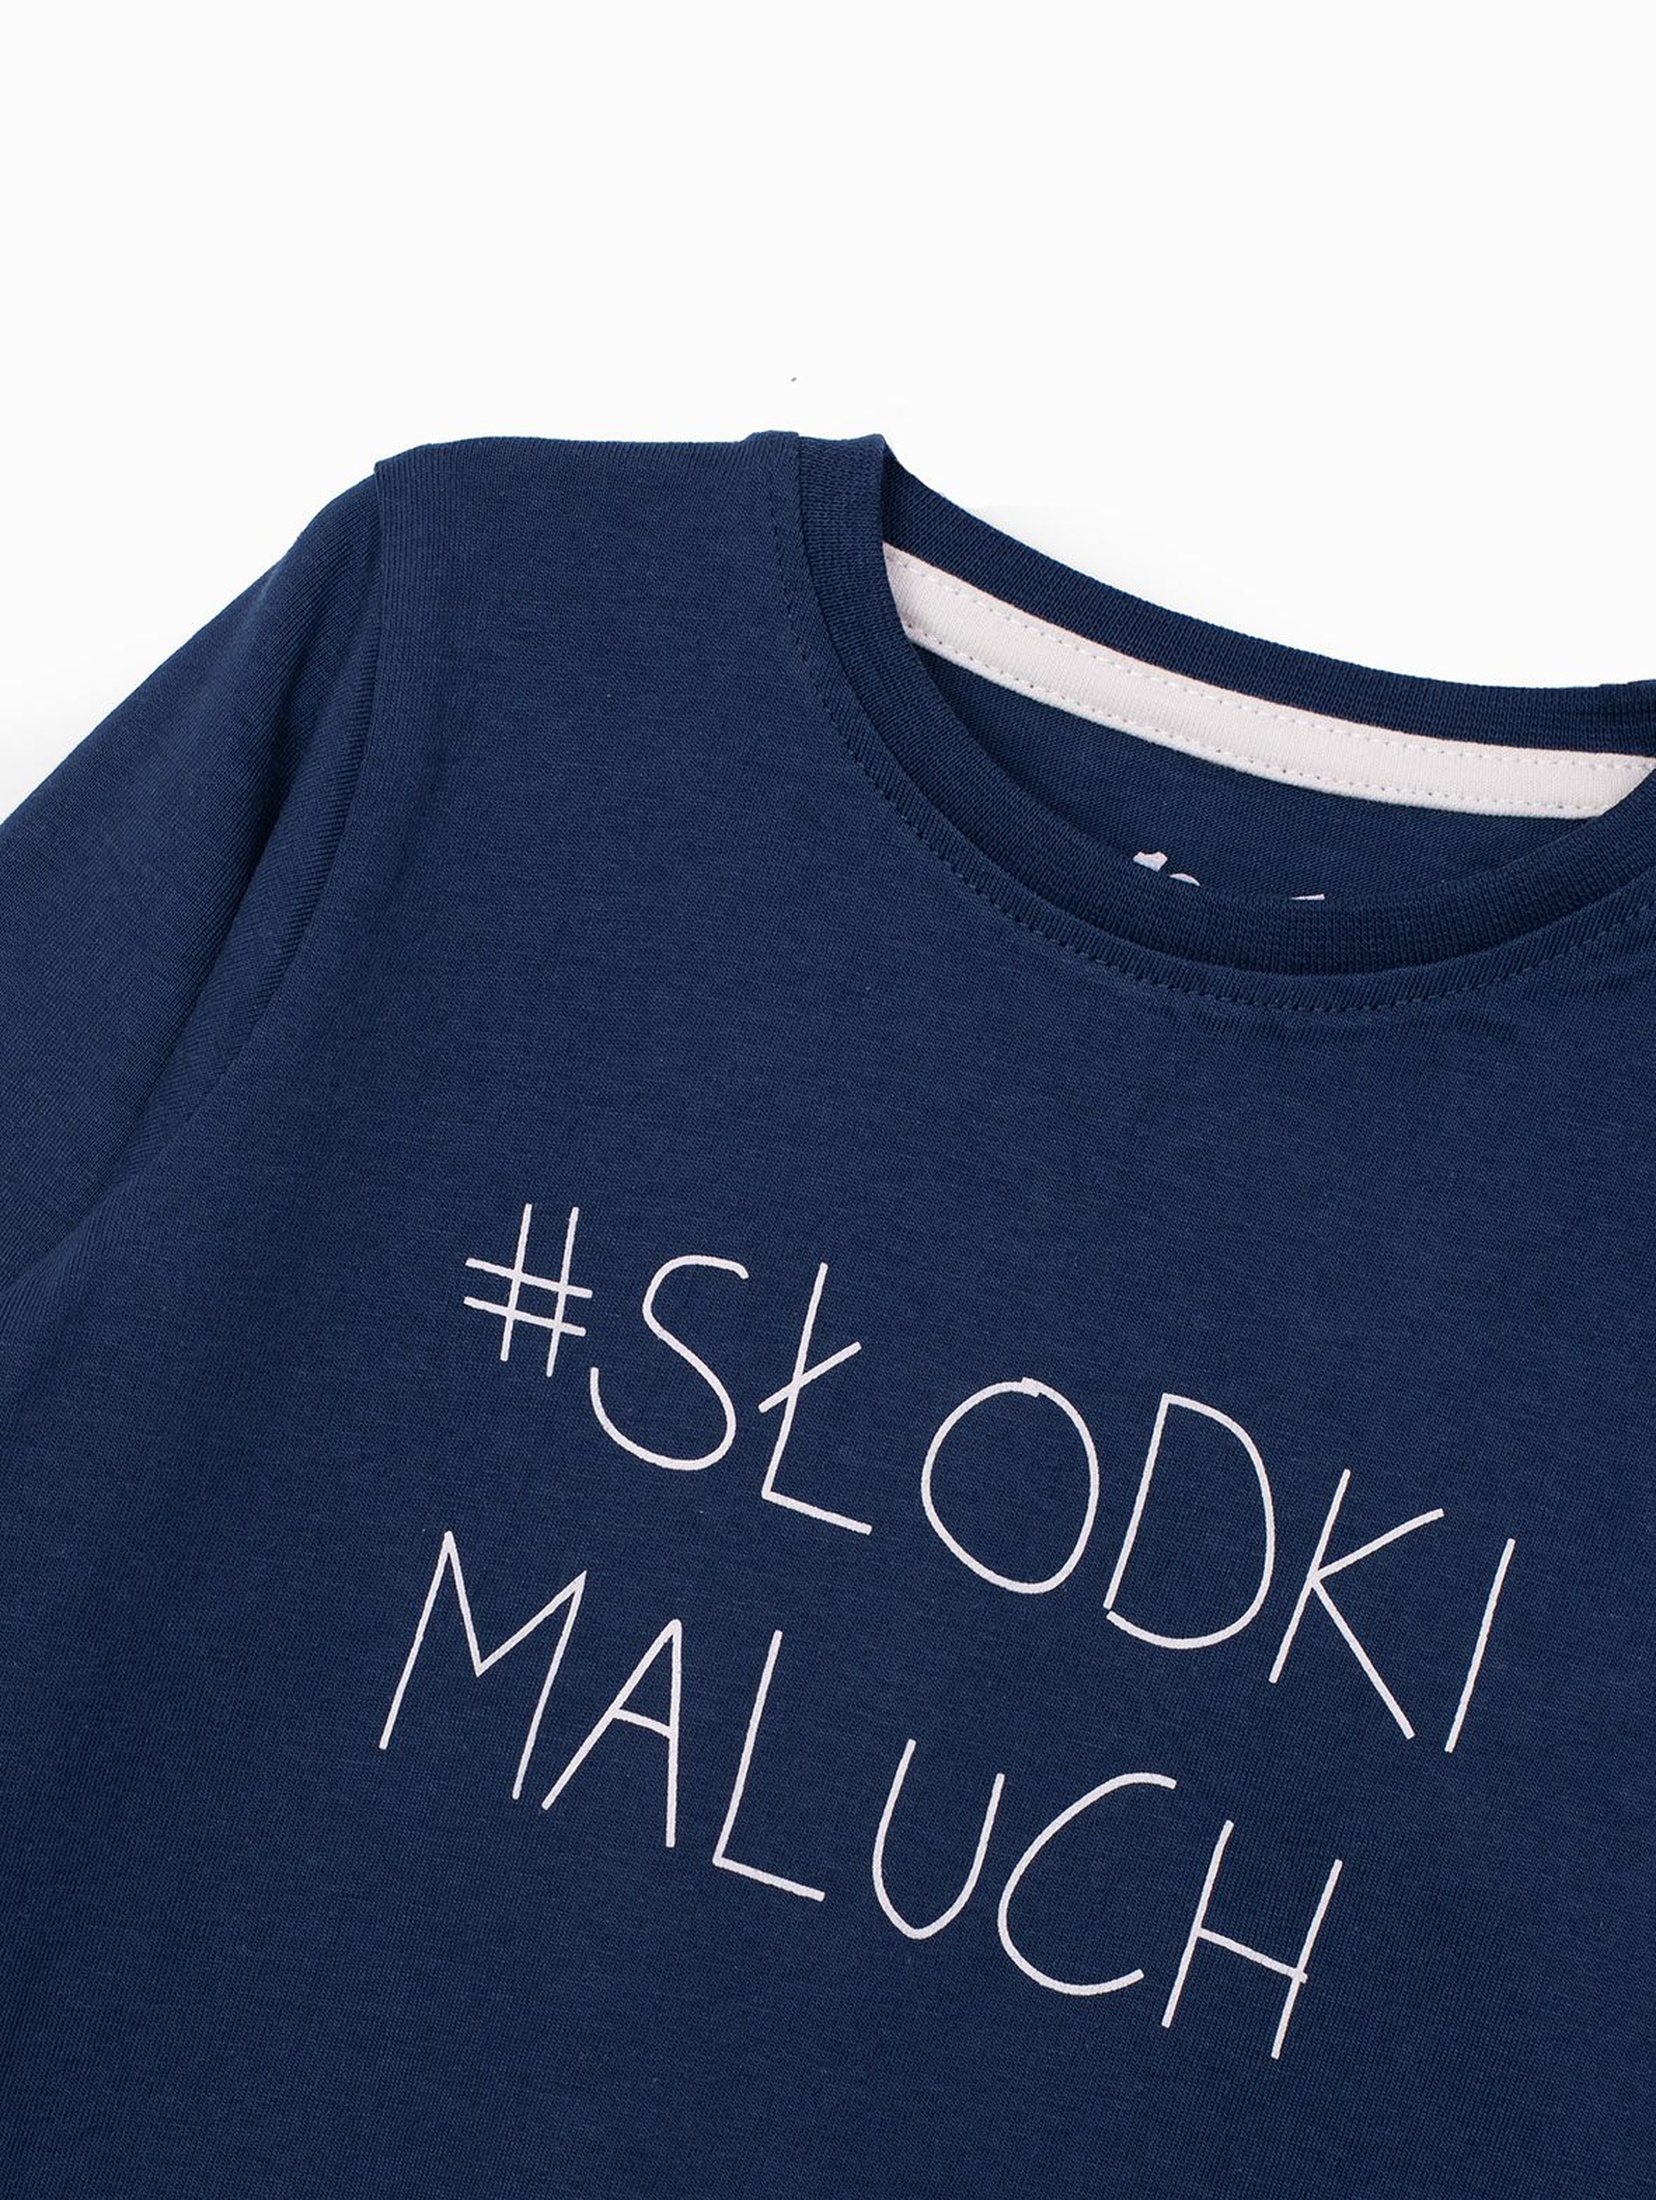 Bluzka niemowlęca z długim rękawem z polskim napisem - #SŁODKI MALUCH